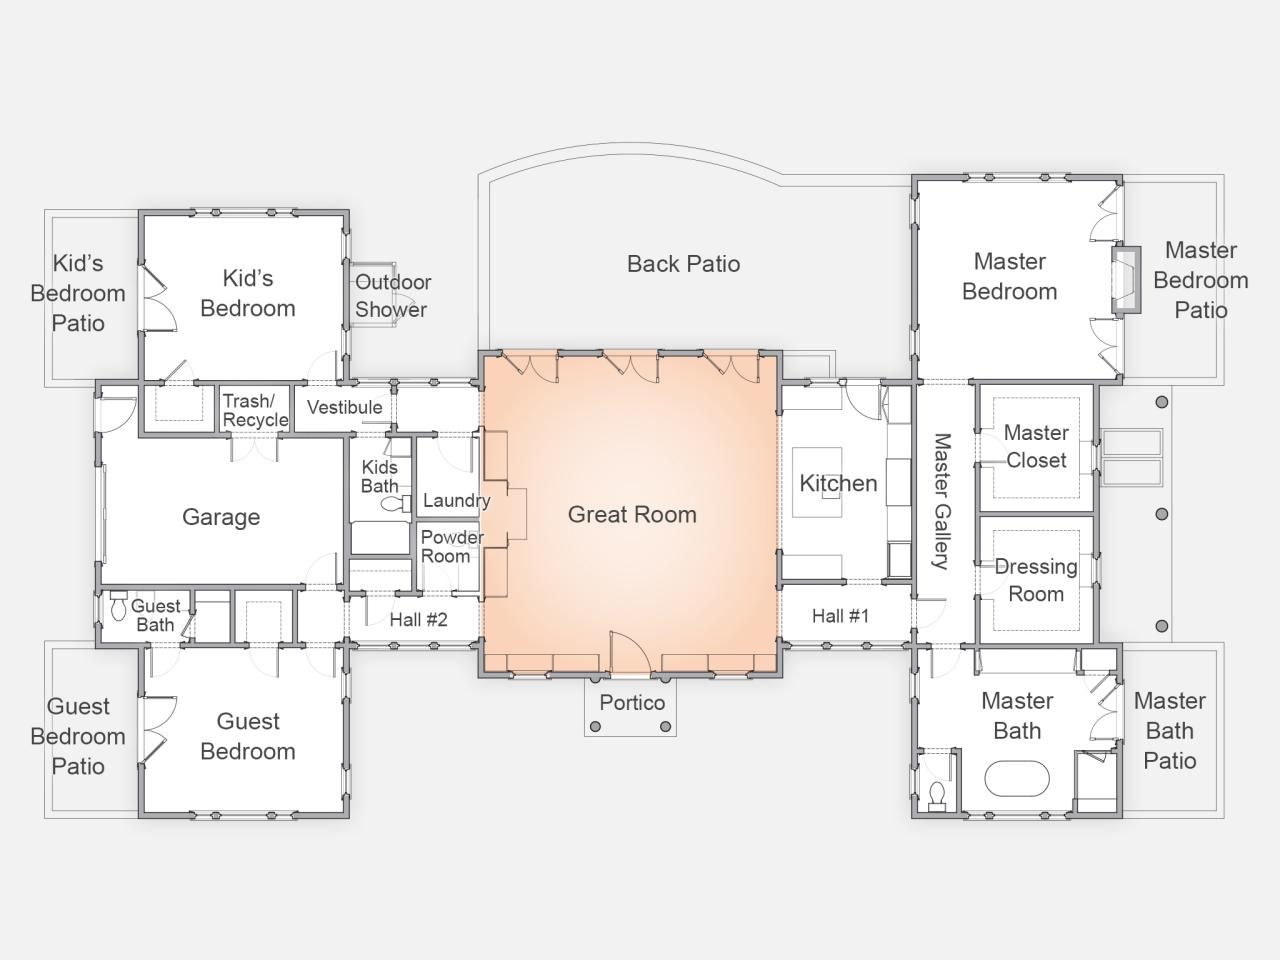 HGTV Dream Home 2015 Floor Plan -   Dream Homes Floor Plans